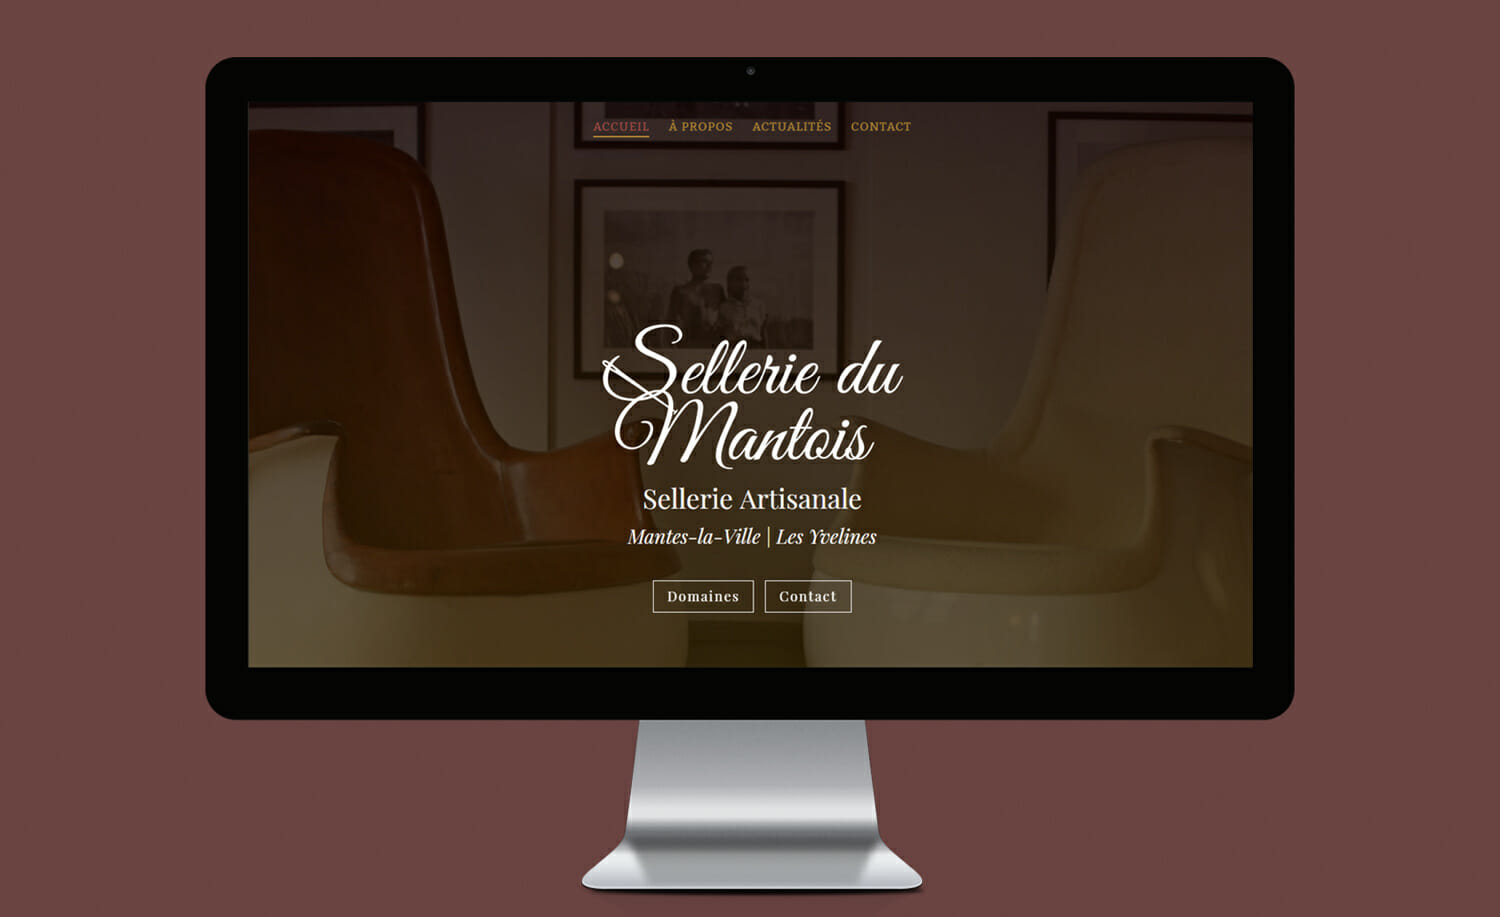 Un site web flambant neuf pour la Sellerie du Mantois